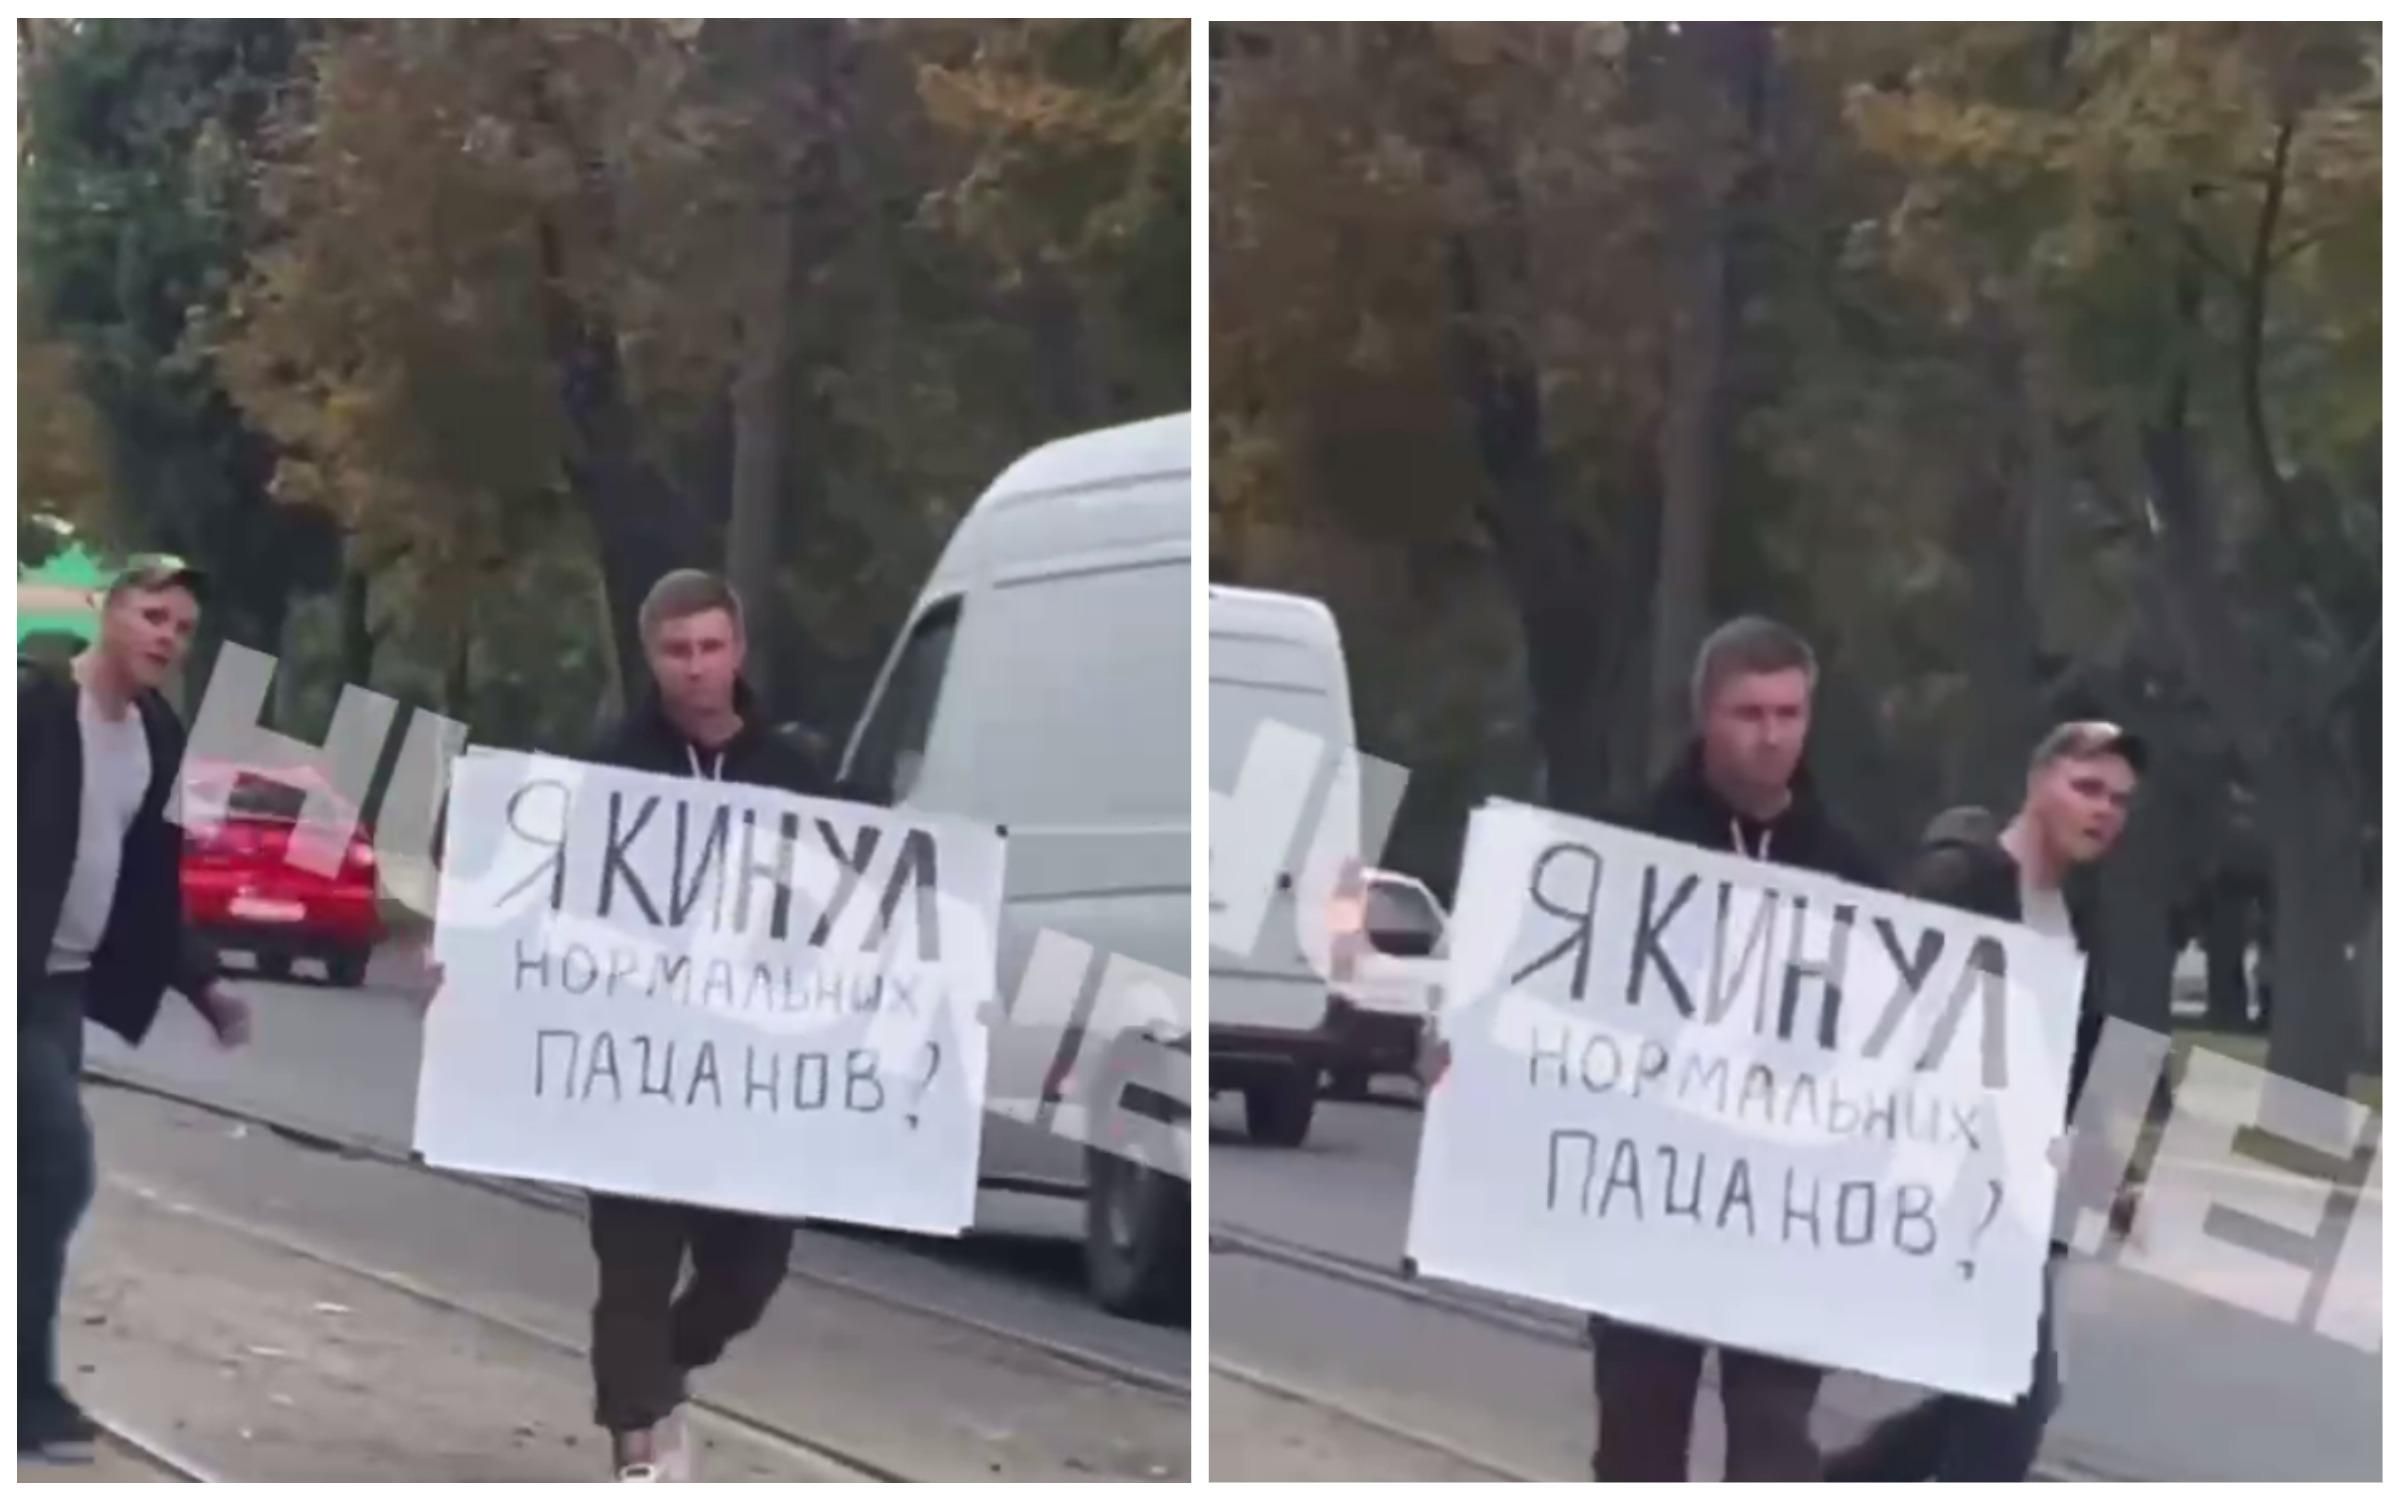 "Кинул нормальных пацанов": в Днепре парень ходил по улицам со странным плакатом